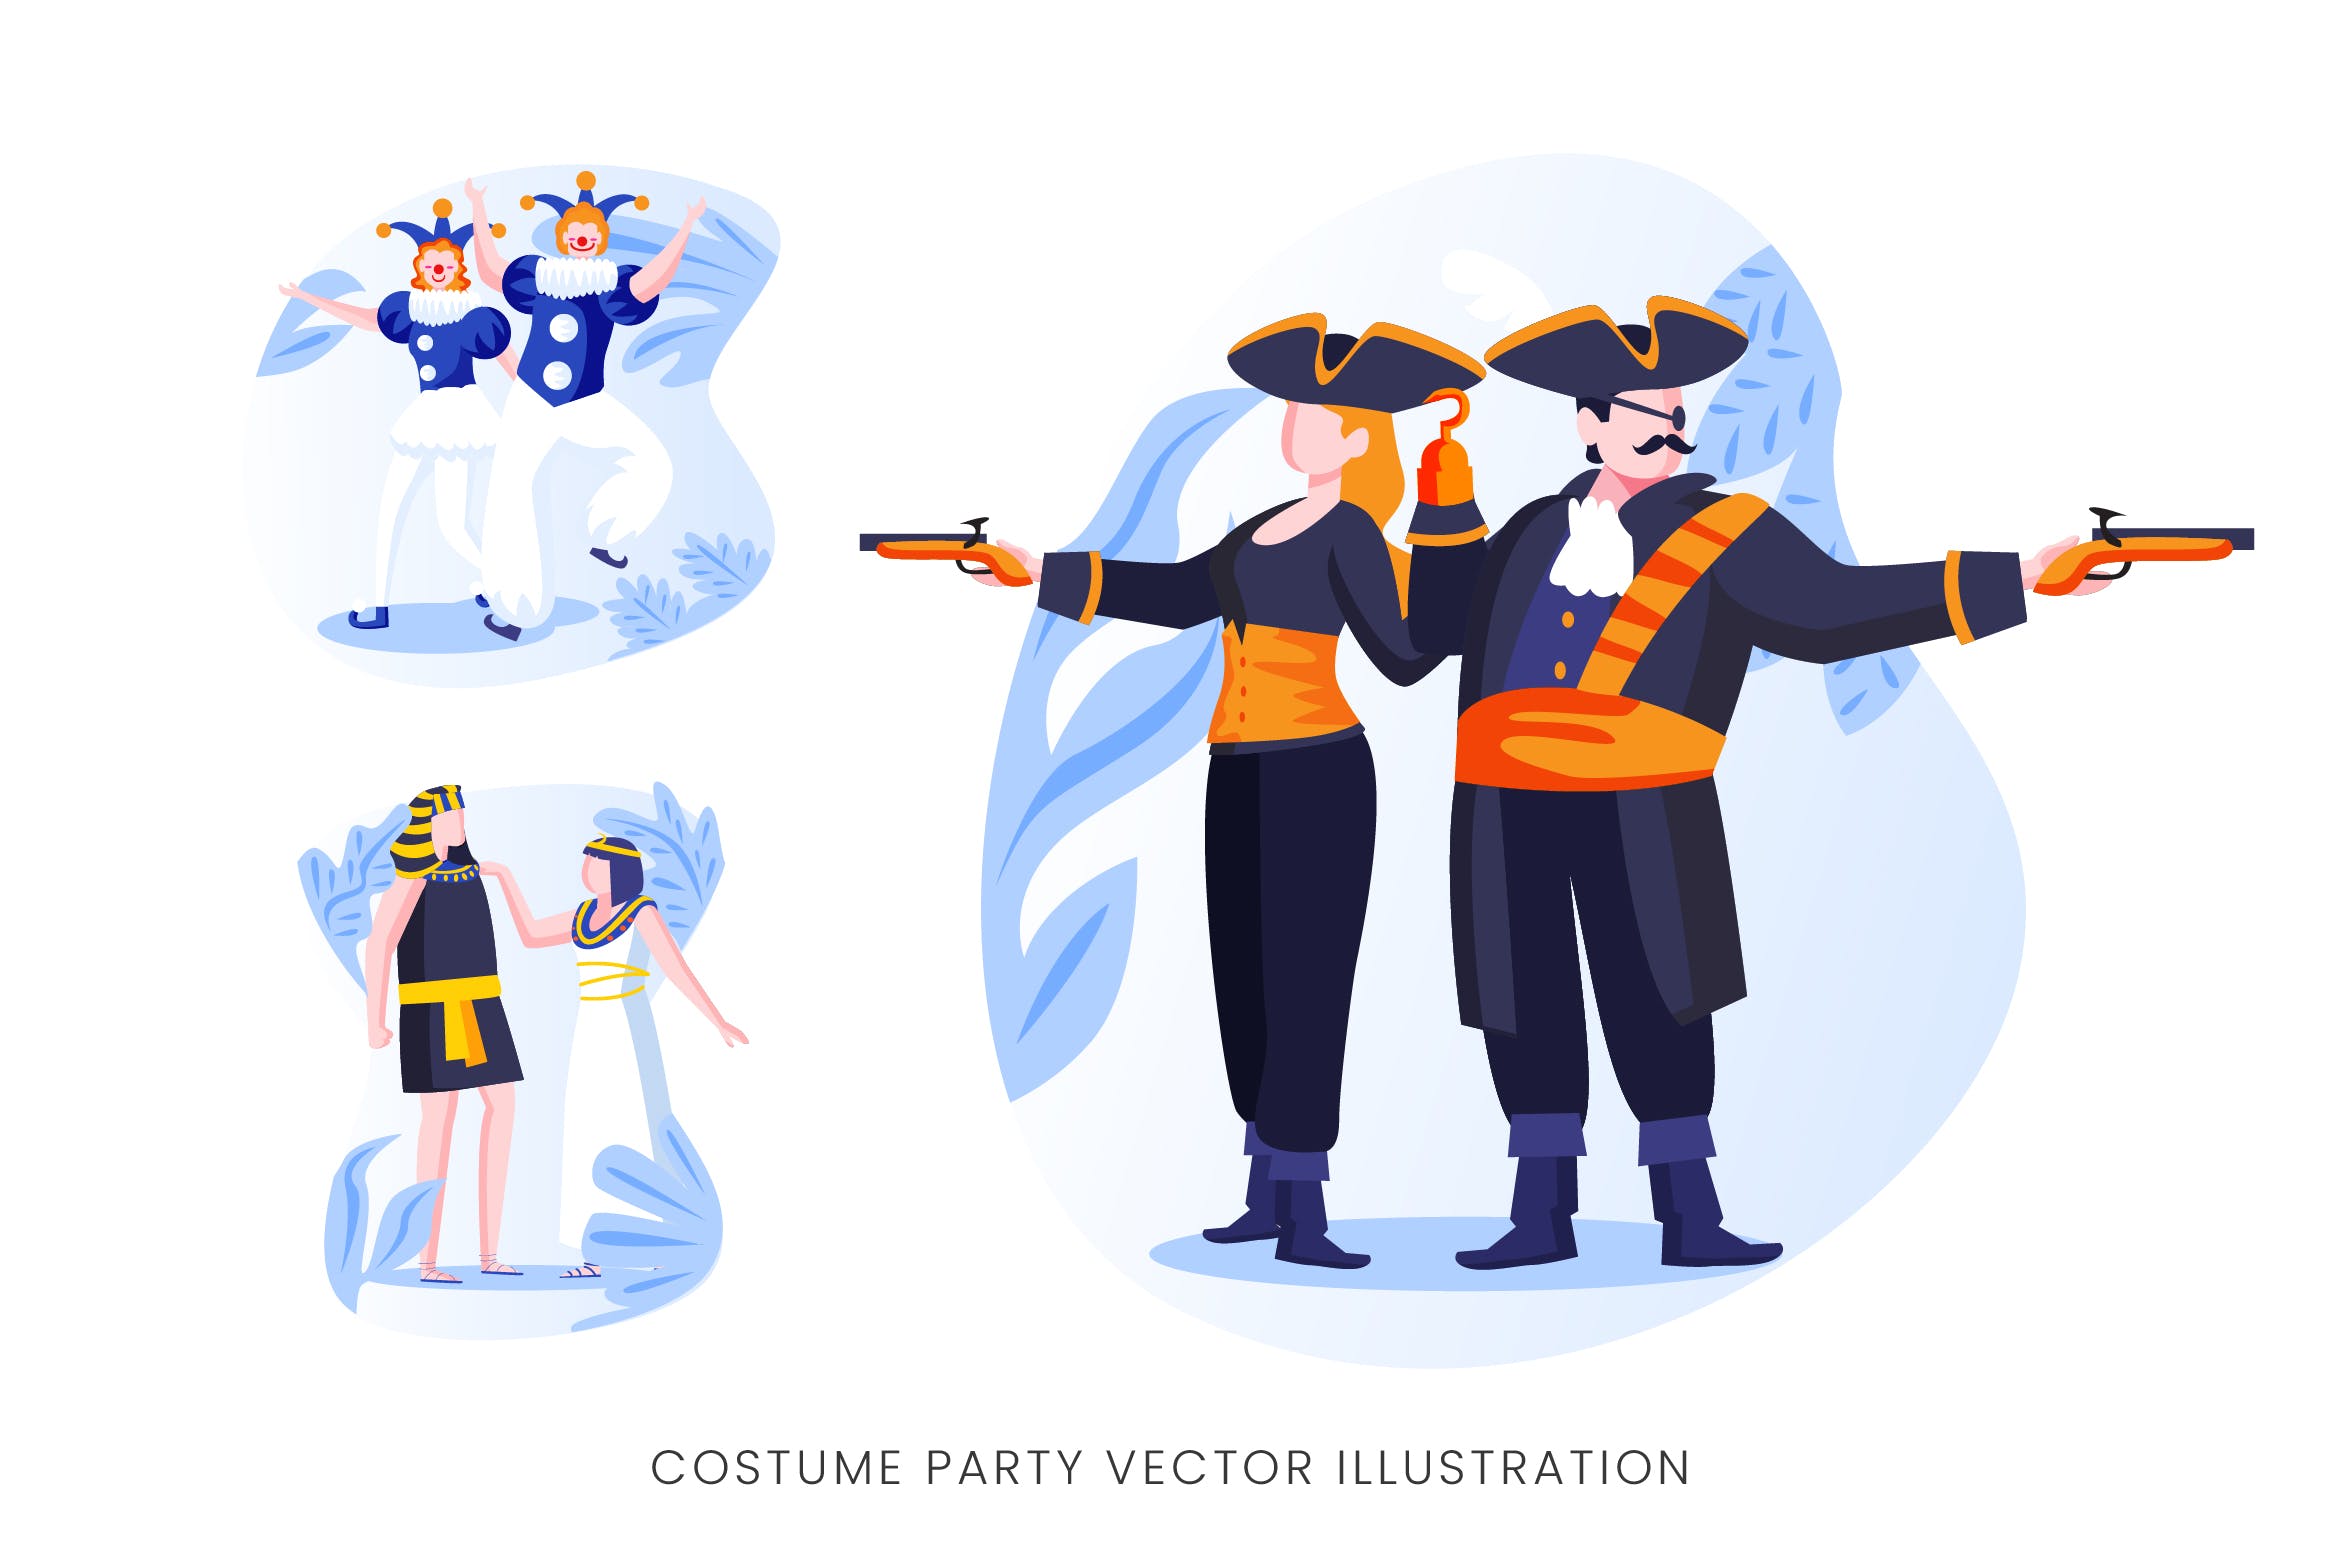 服装Cosplay派对人物形象矢量手绘素材库精选设计素材 Costume Party Vector Character Set插图